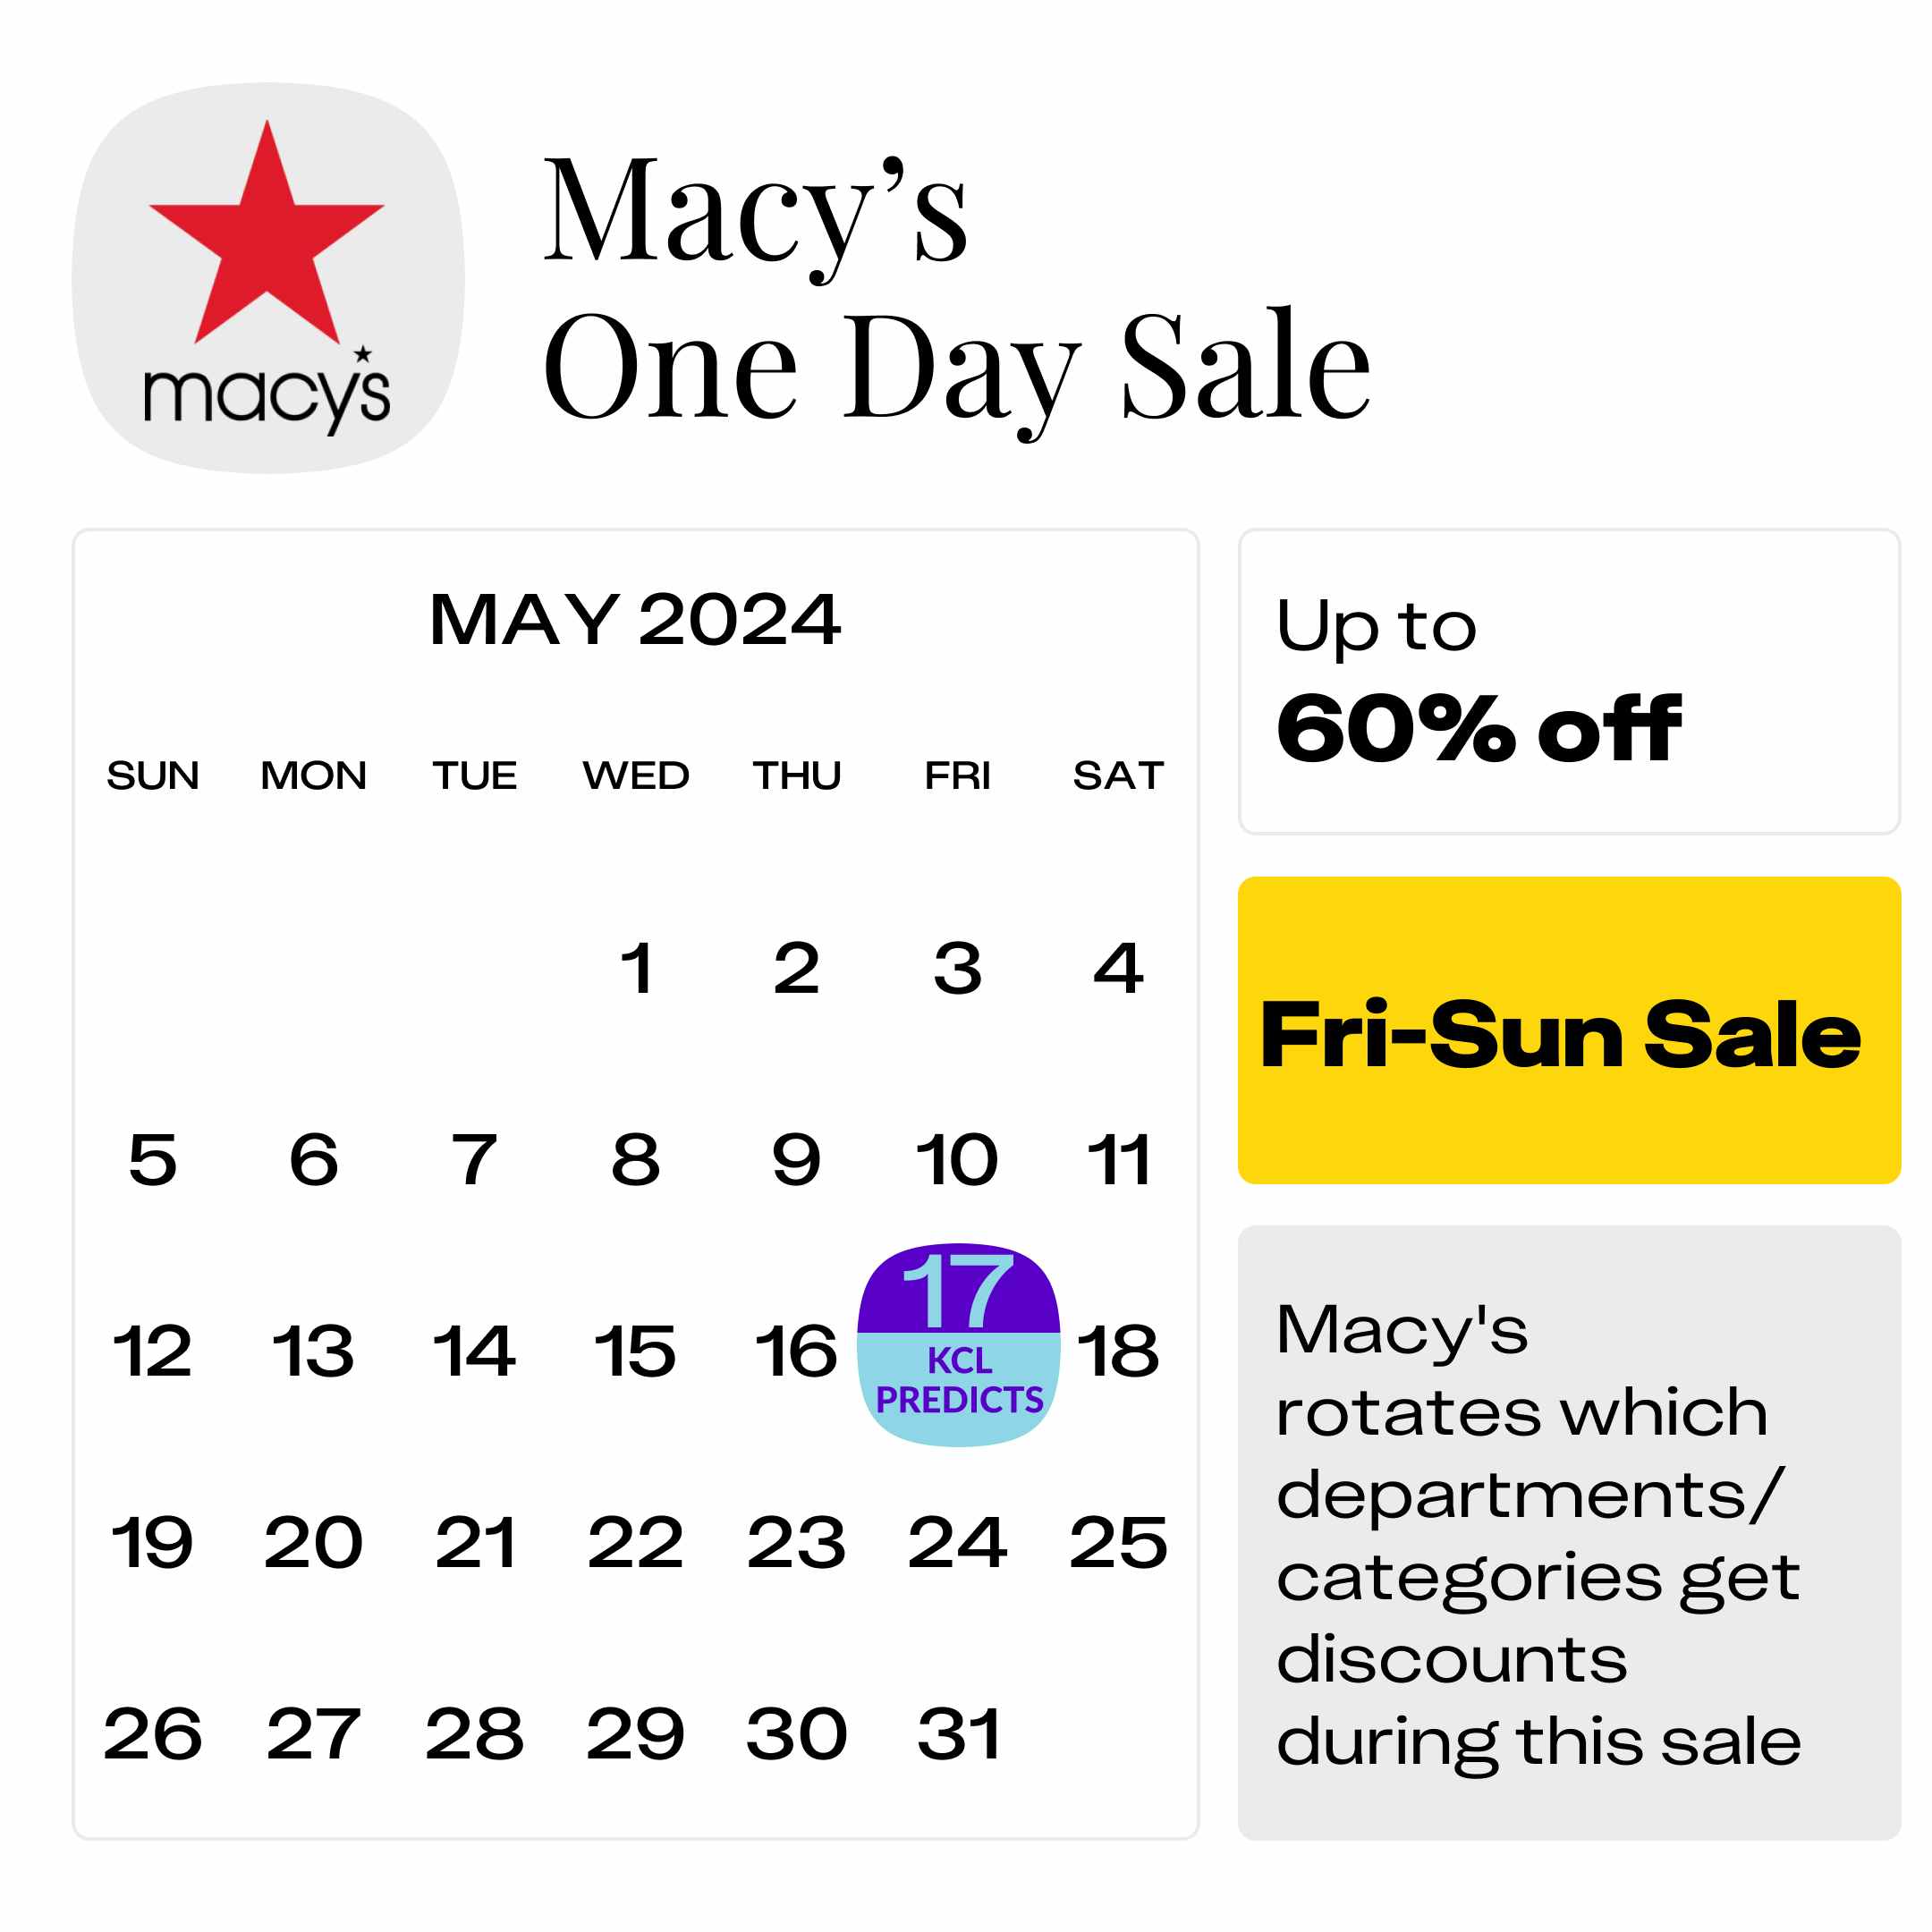 Macys-One-Day-Sale (1)